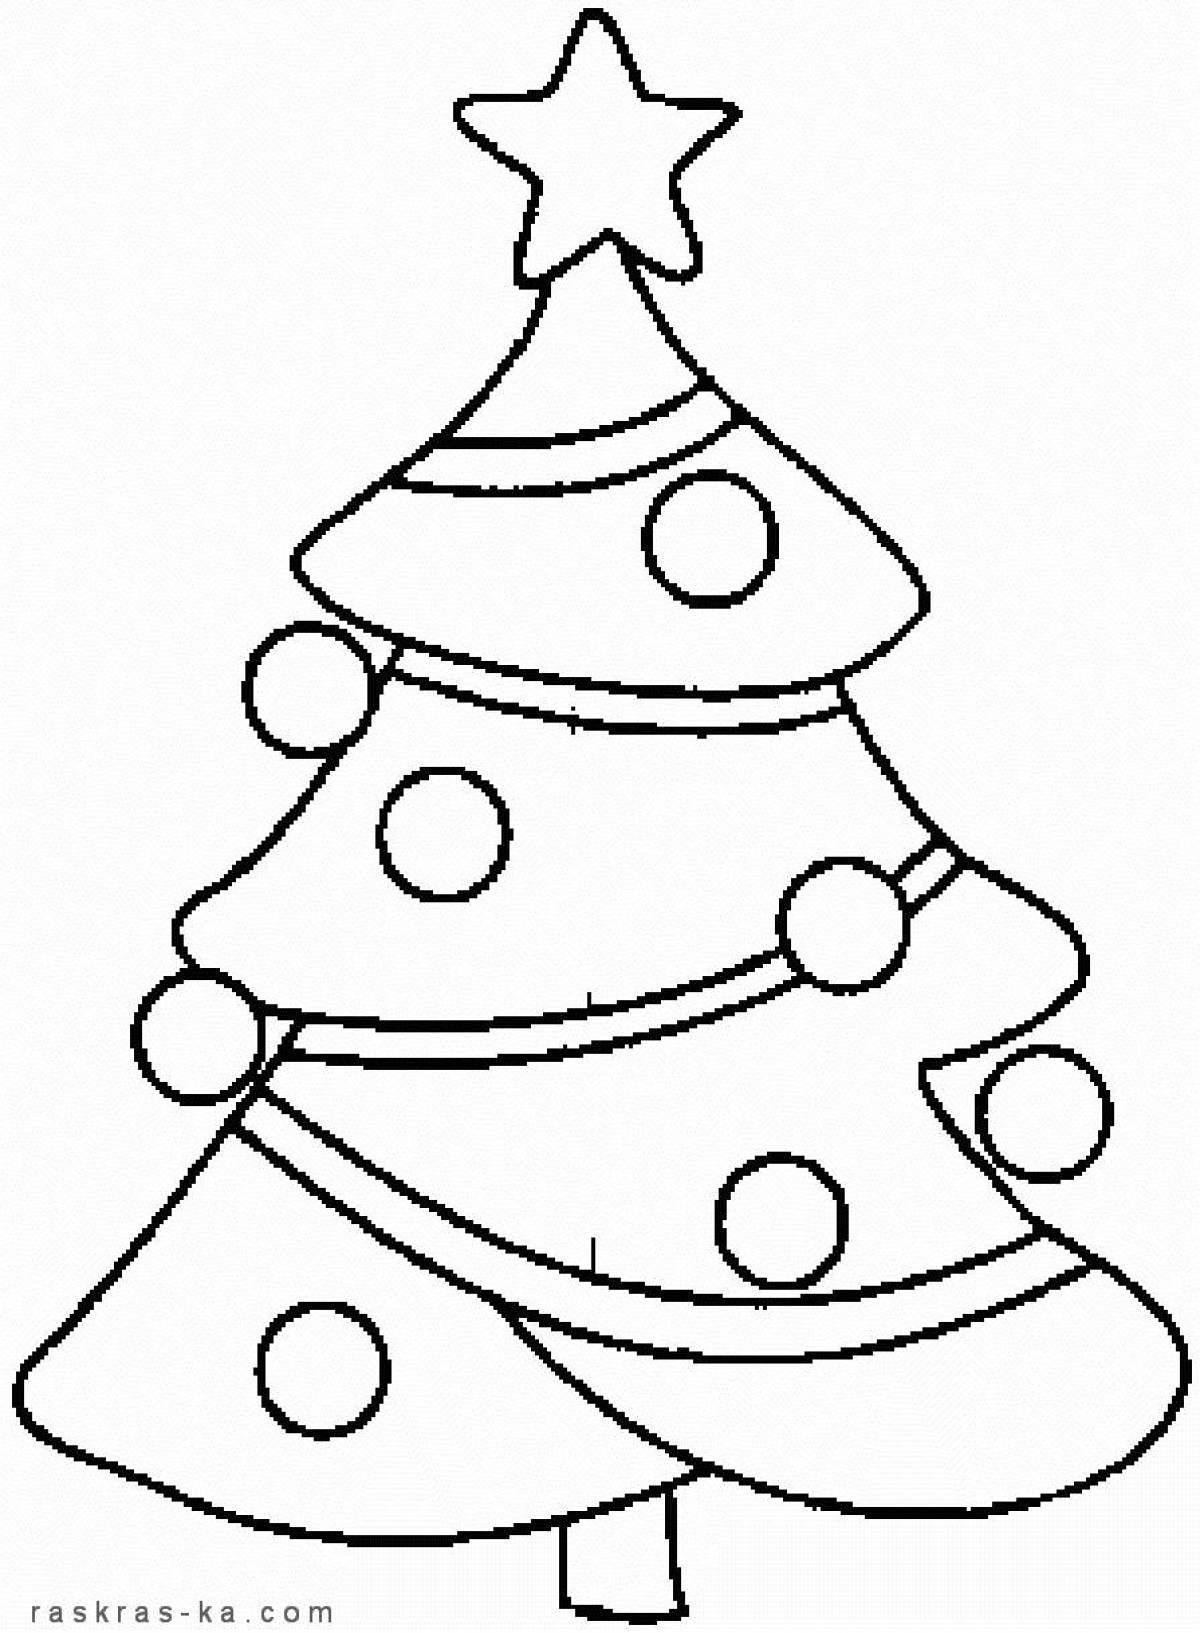 Великолепная раскраска рождественская елка